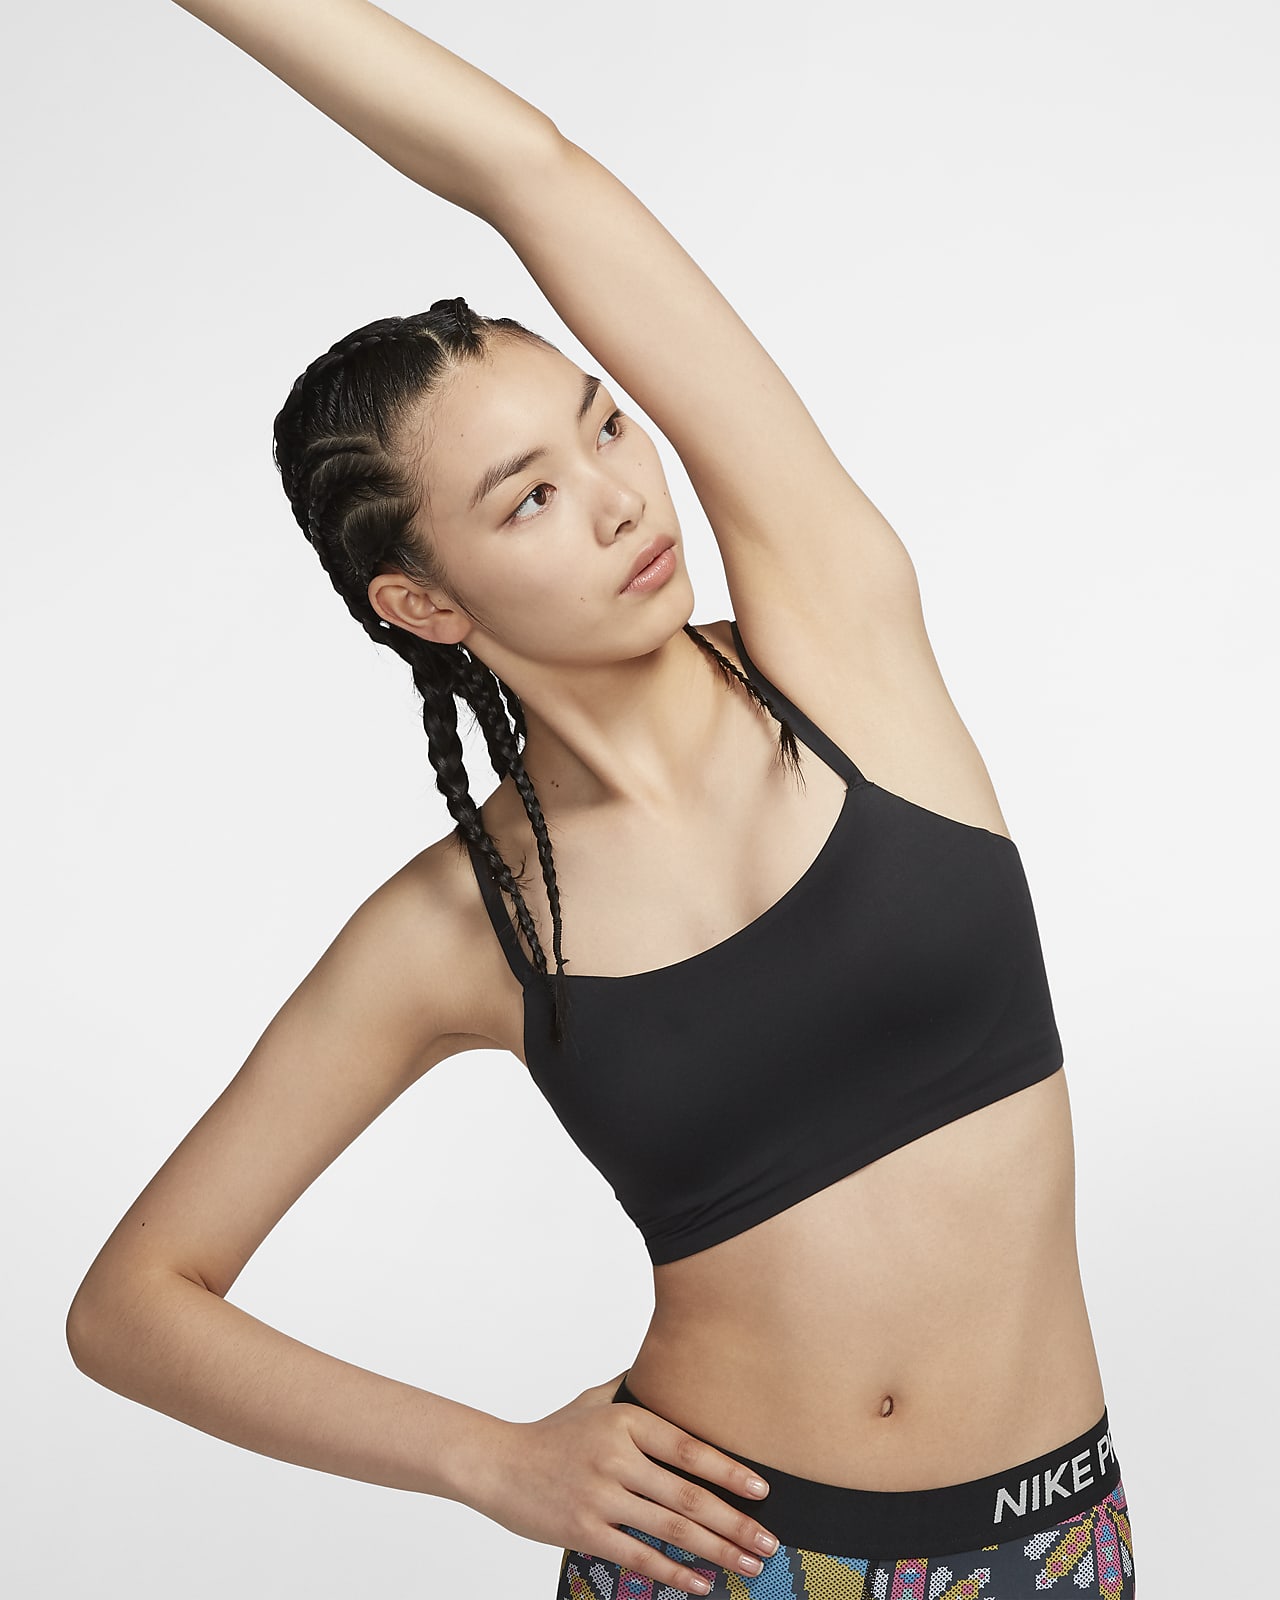 Nike Indy Luxe 女款輕度支撐型襯墊兩用肩帶運動內衣